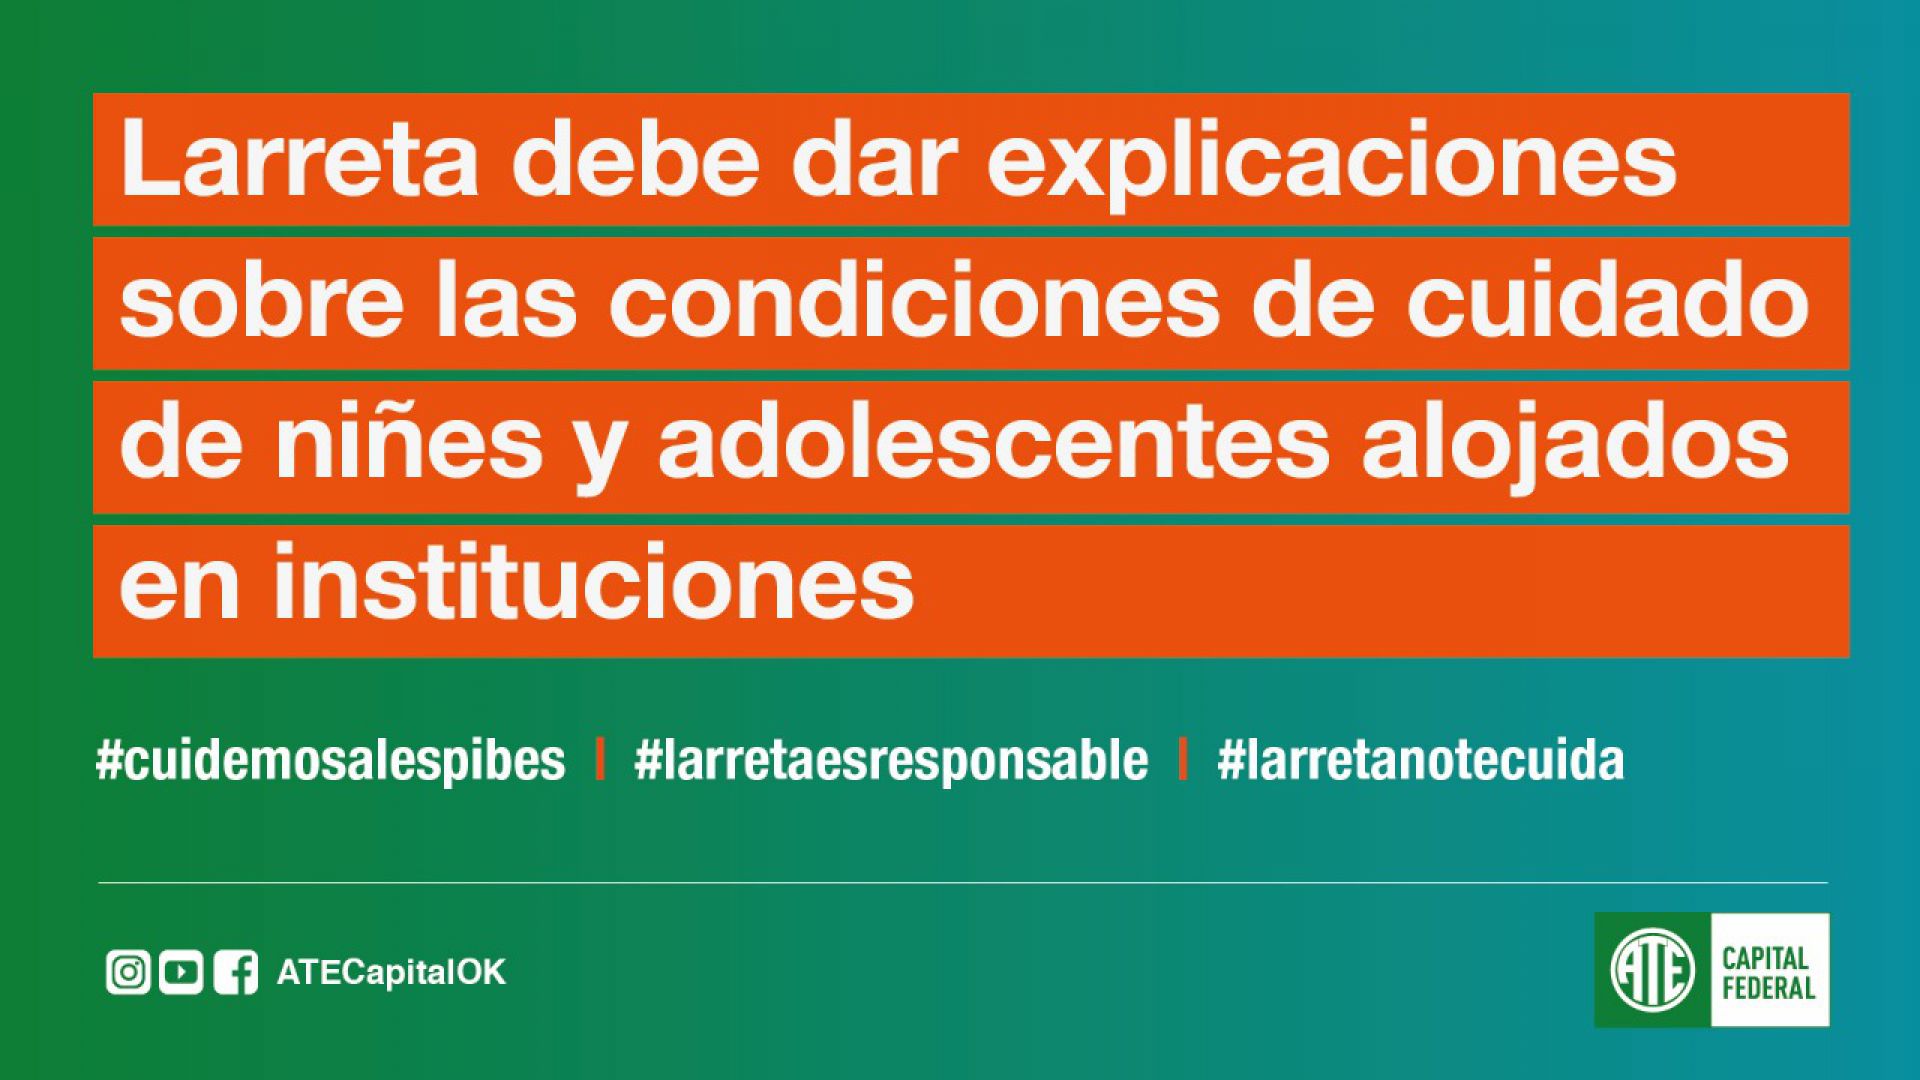 31/7: Larreta debe dar explicaciones sobre las condiciones de cuidado de niñes y adolescentes alojados en instituciones